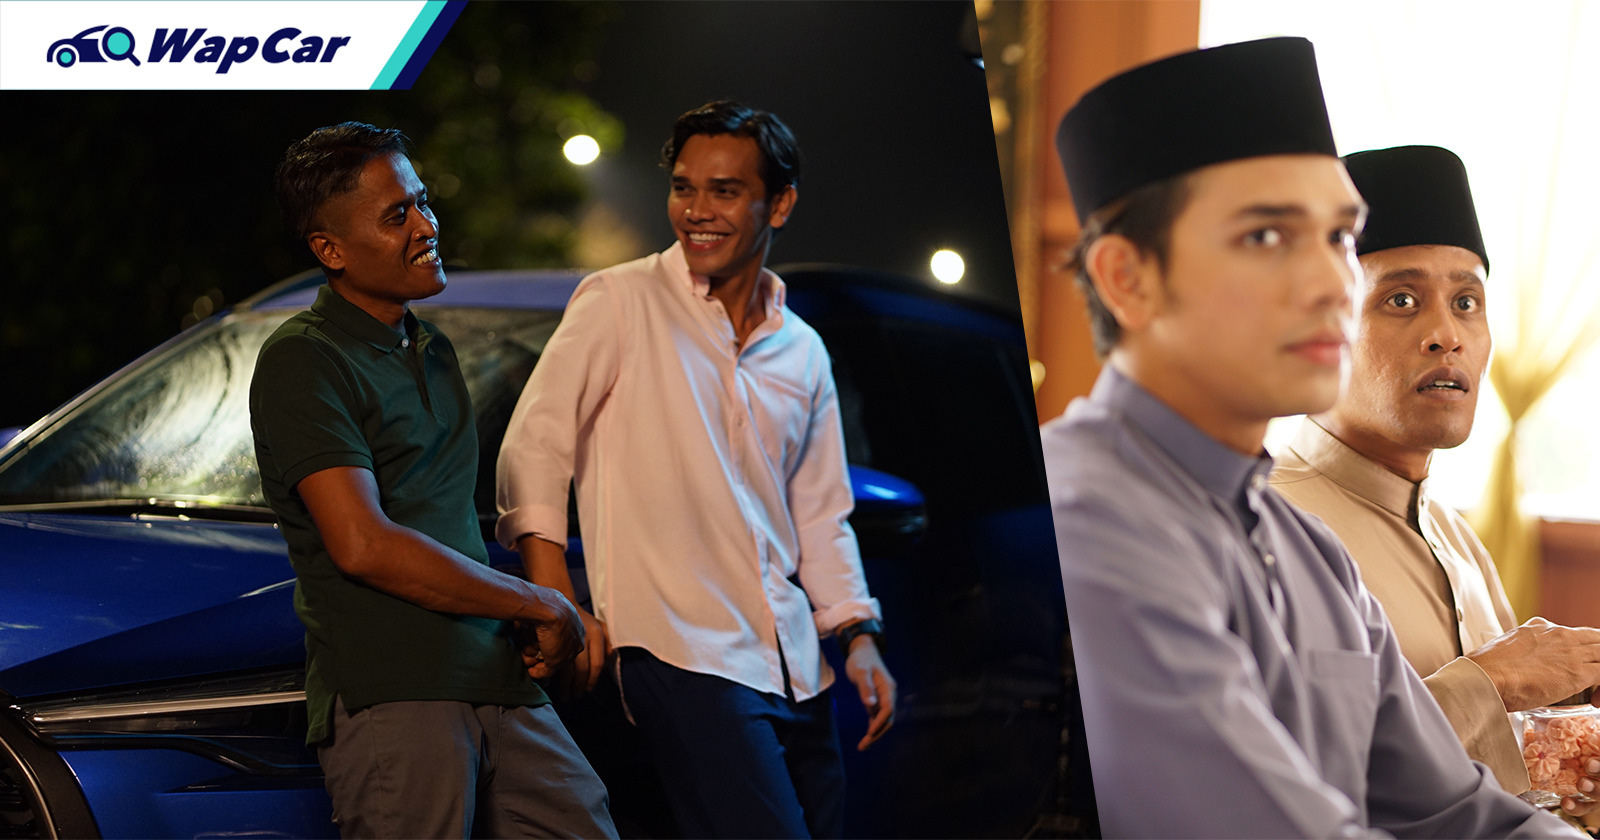 UMW Toyota Malaysia meriahkan Aidilfitri dengan filem pendek dan duit raya jika pandu uji Toyota!